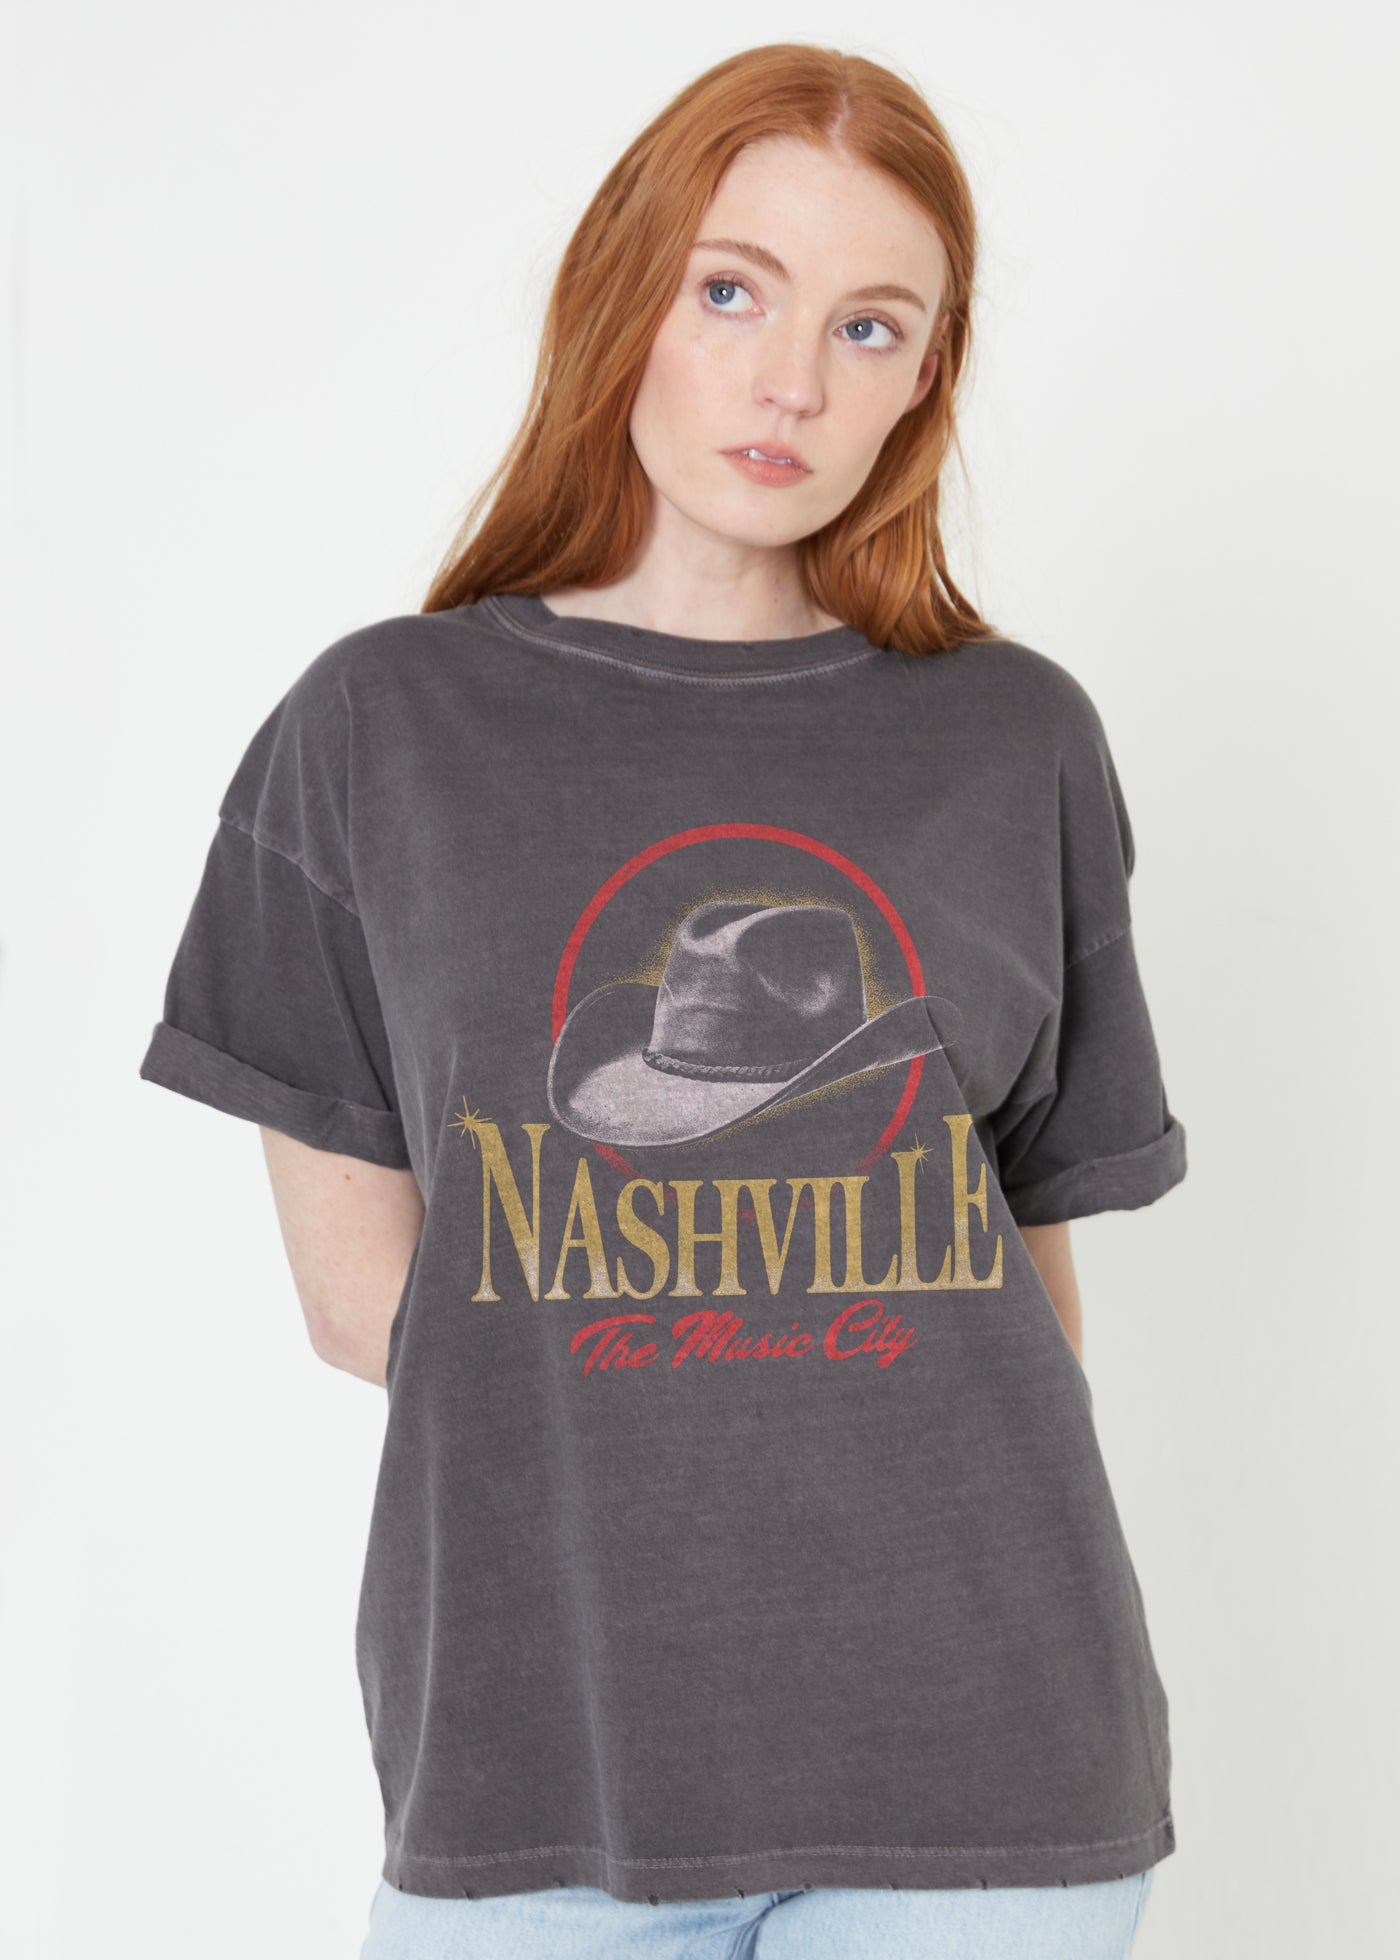 Nashville Hat Boyfriend Tee